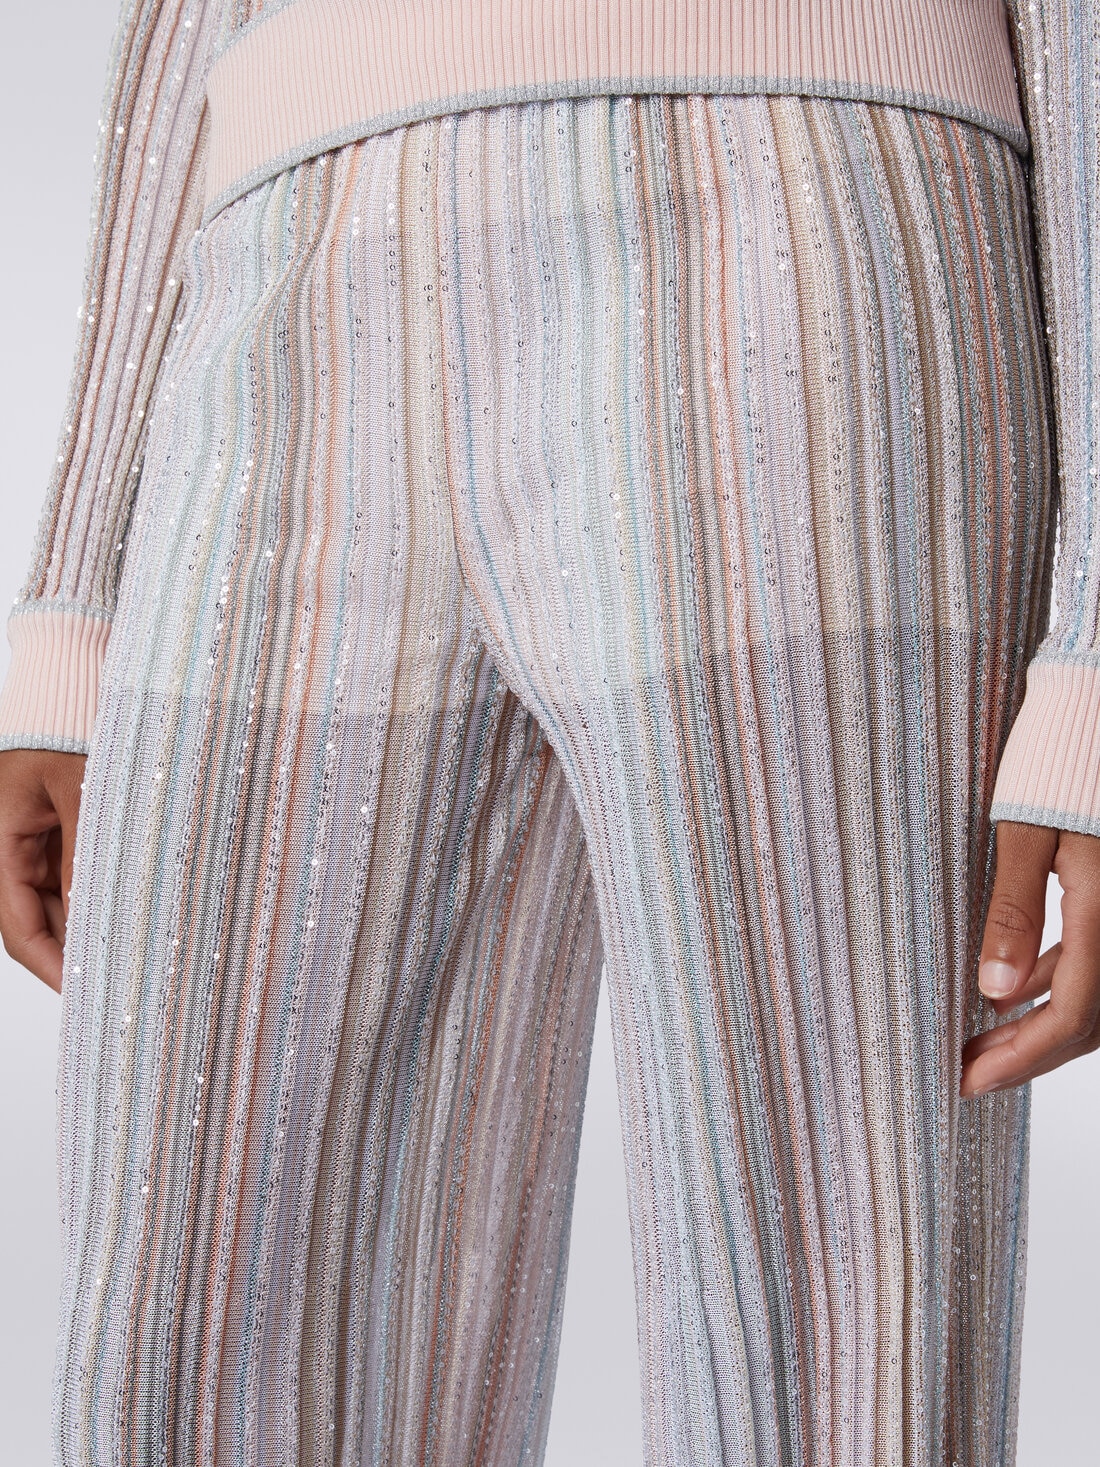 Pantaloni in maglia a righe verticali con paillettes, Multicolore  - DS24SI11BK033MSM9AH - 4